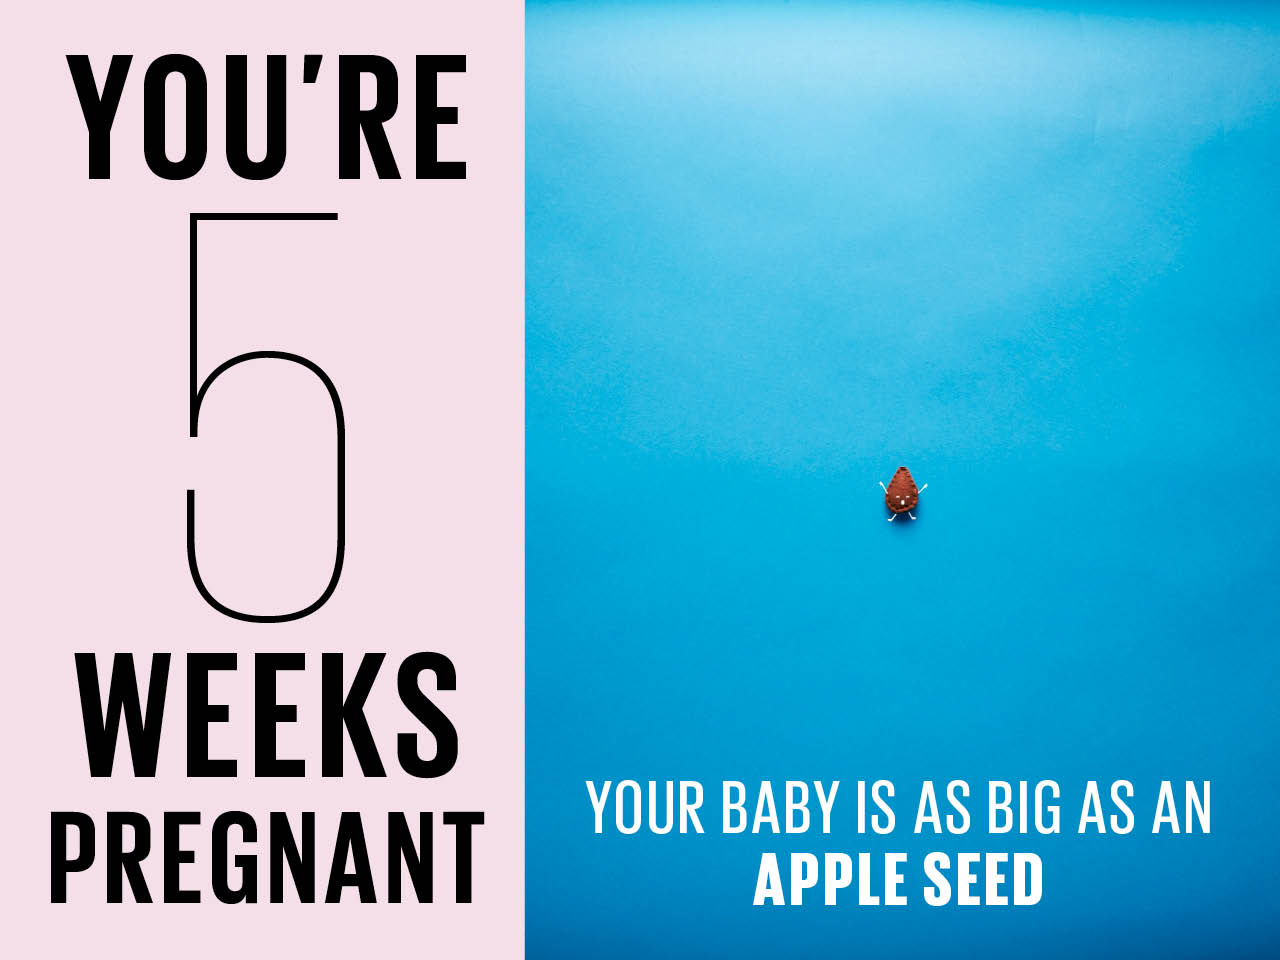 5 weeks pregnant